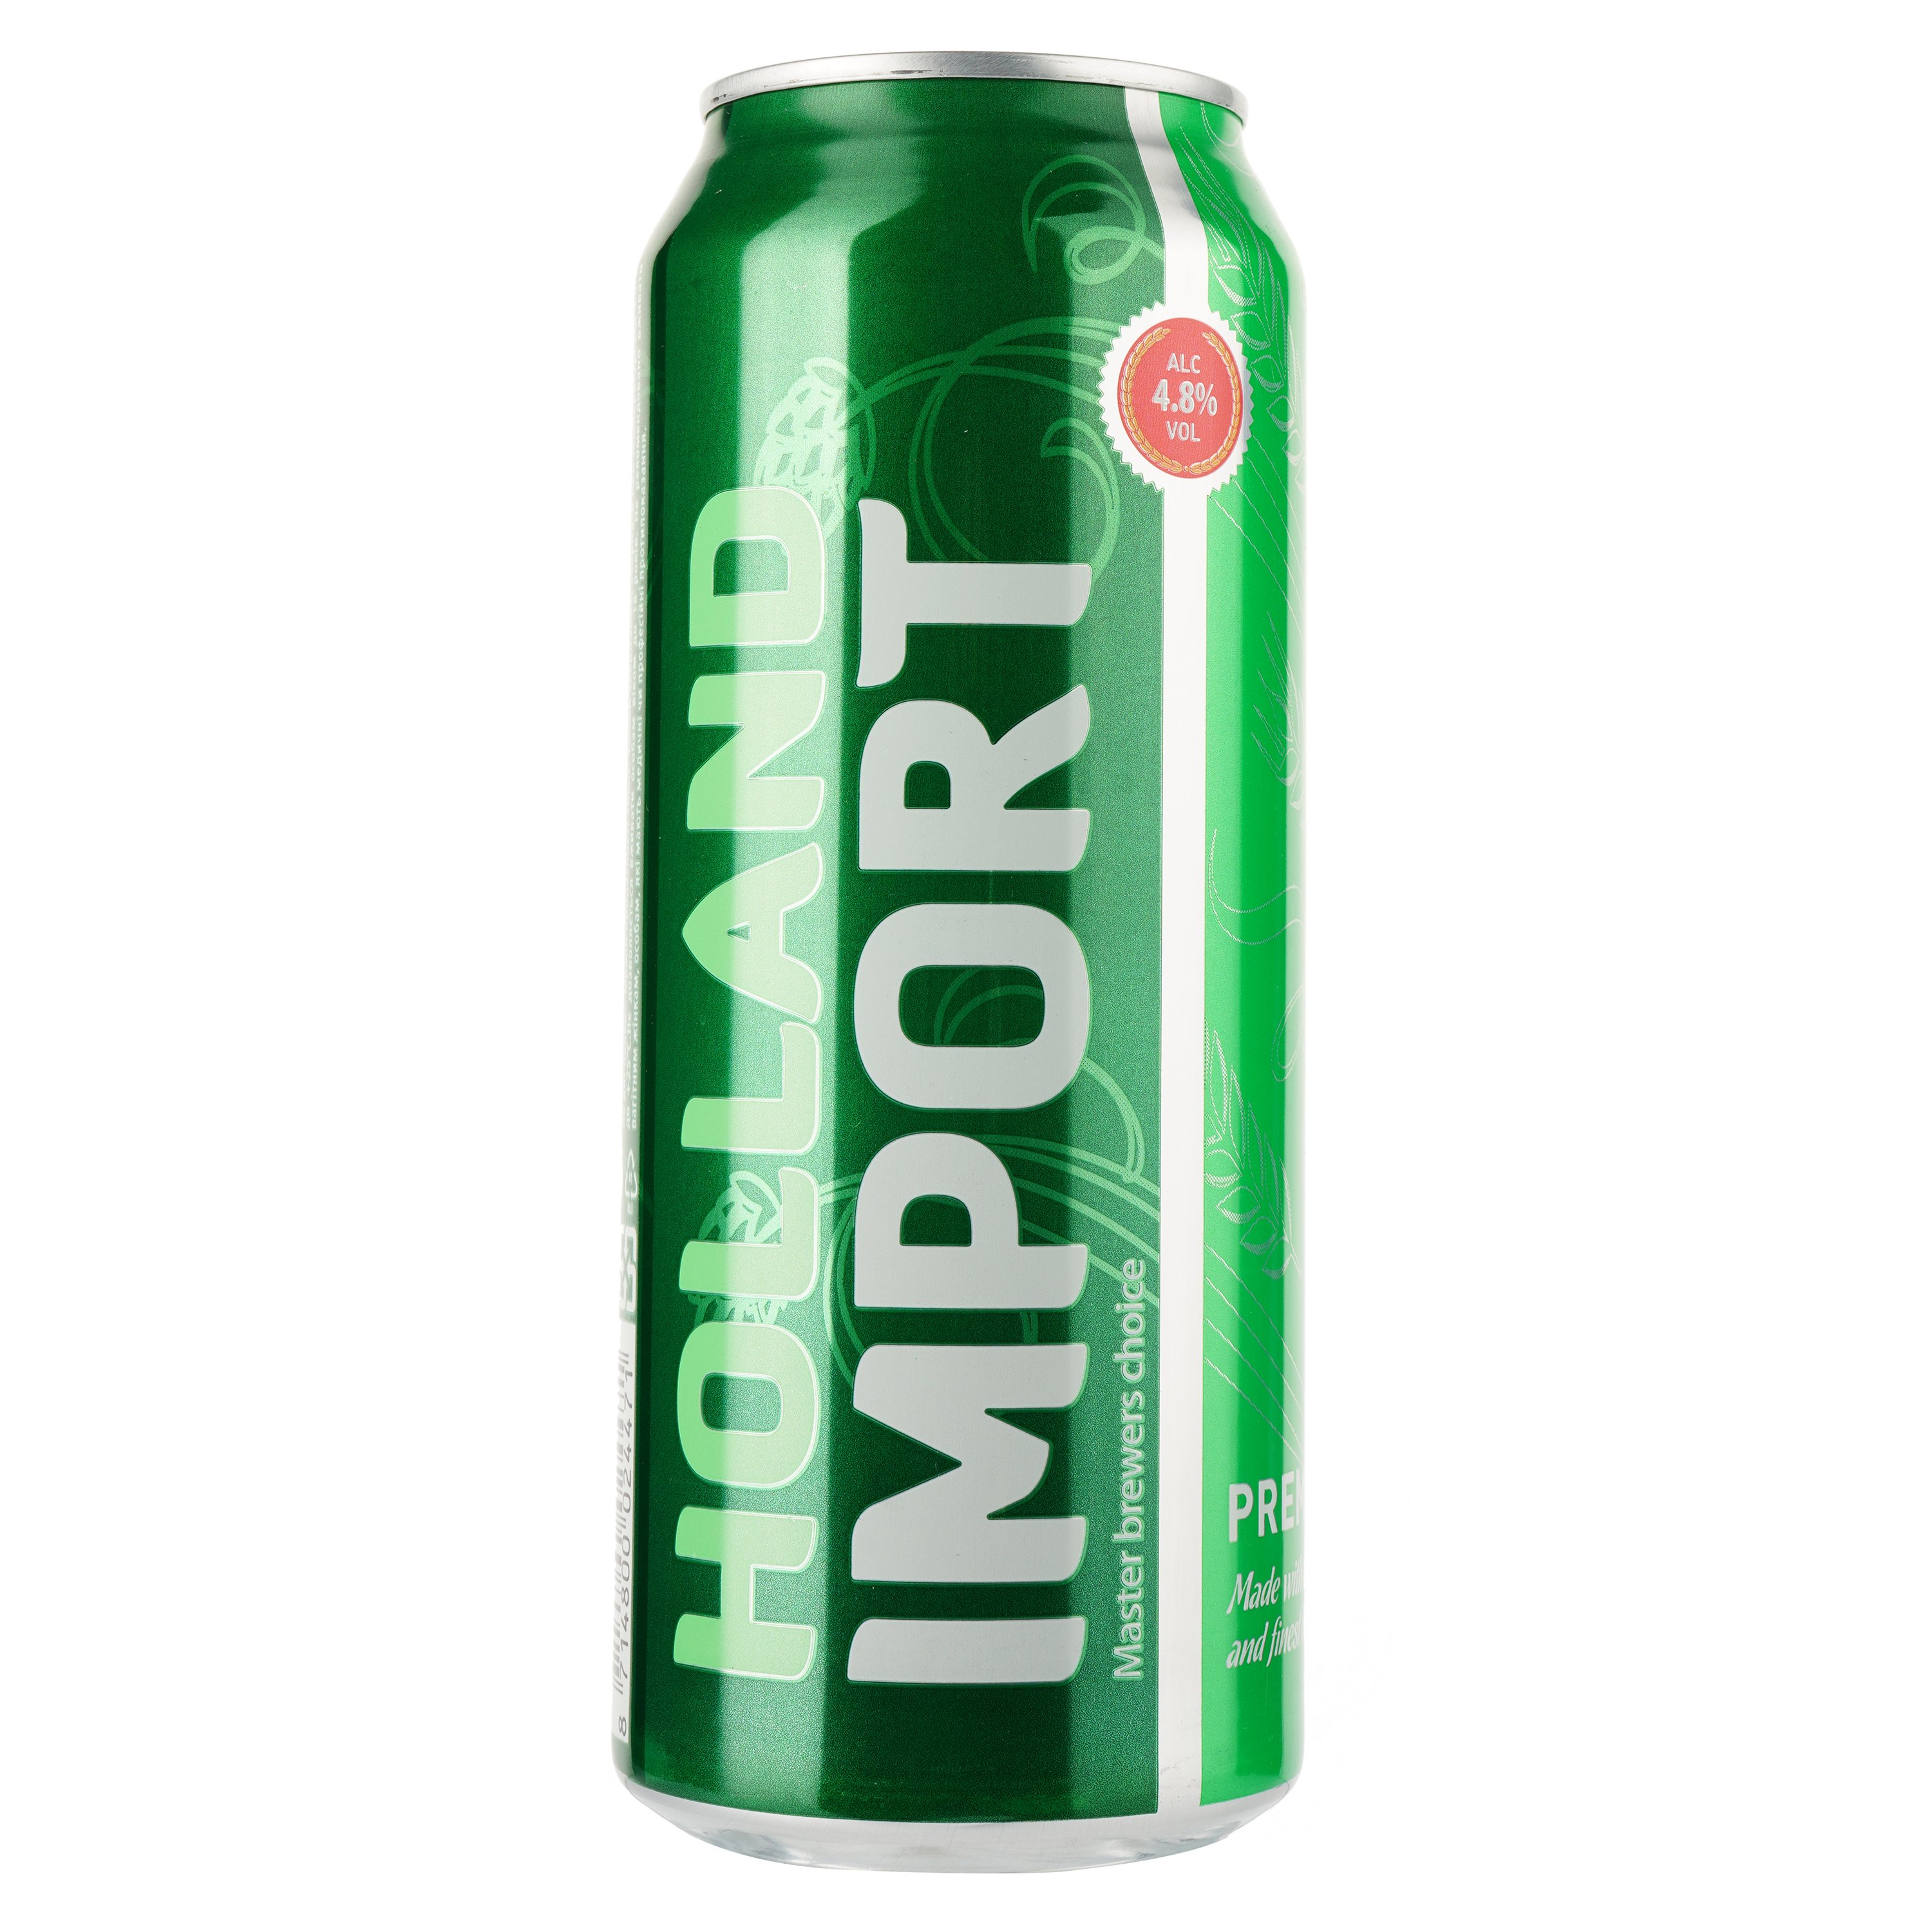 Пиво Holland Import, светлое, фильтрованное, 4,8%, ж/б, 0,5 л - фото 1